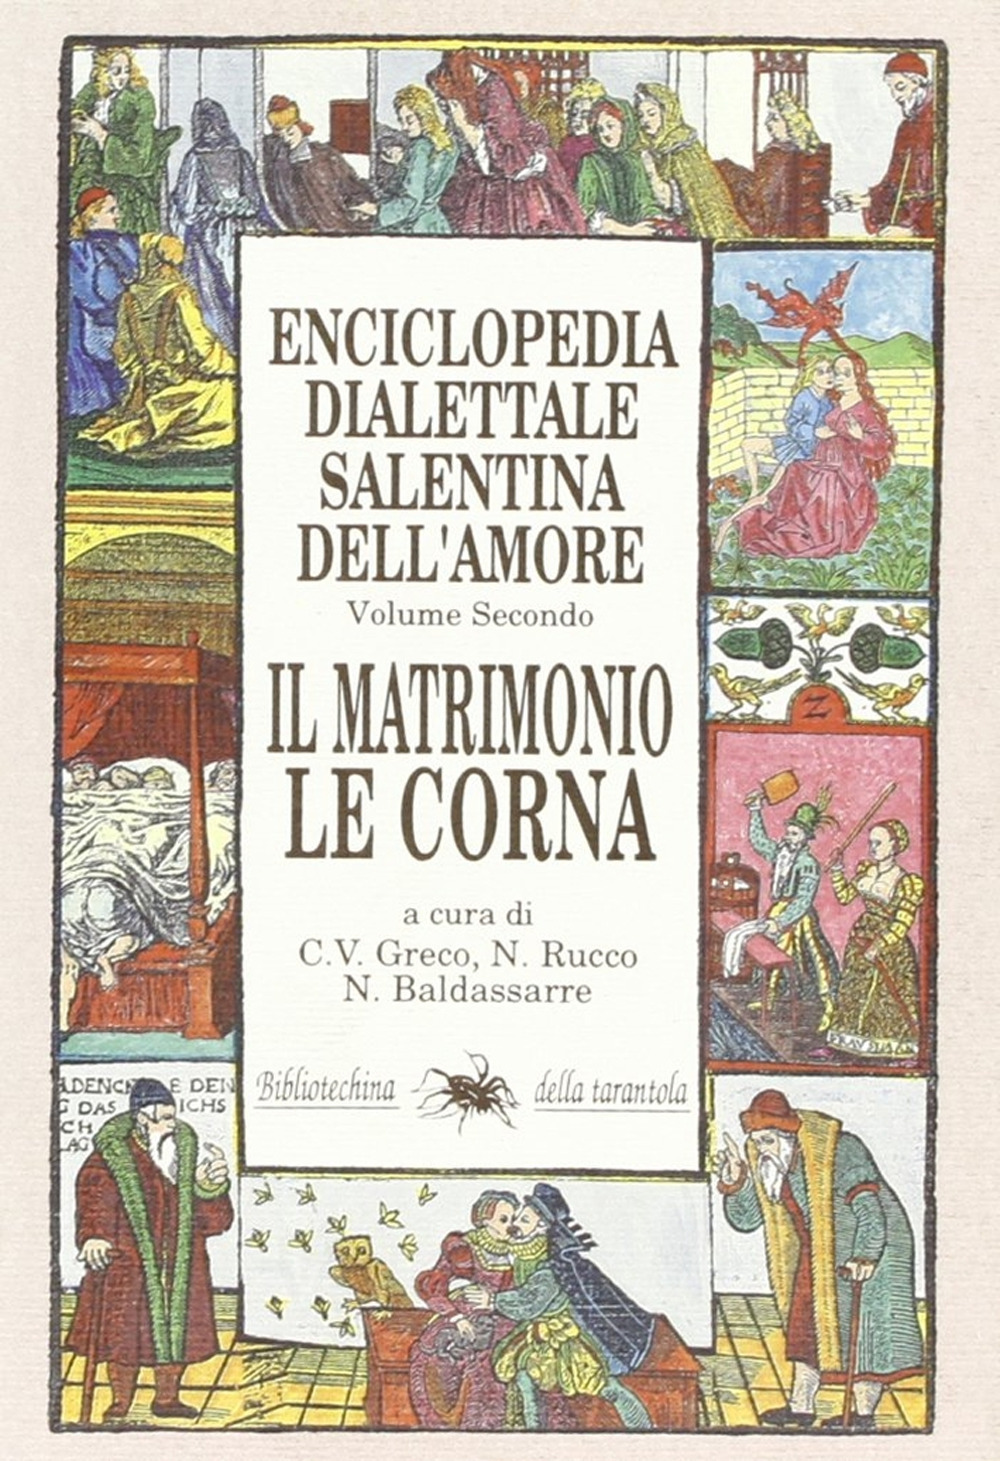 Enciclopedia dialettale salentina dell'amore. Vol. 2: Il matrimonio, le corna